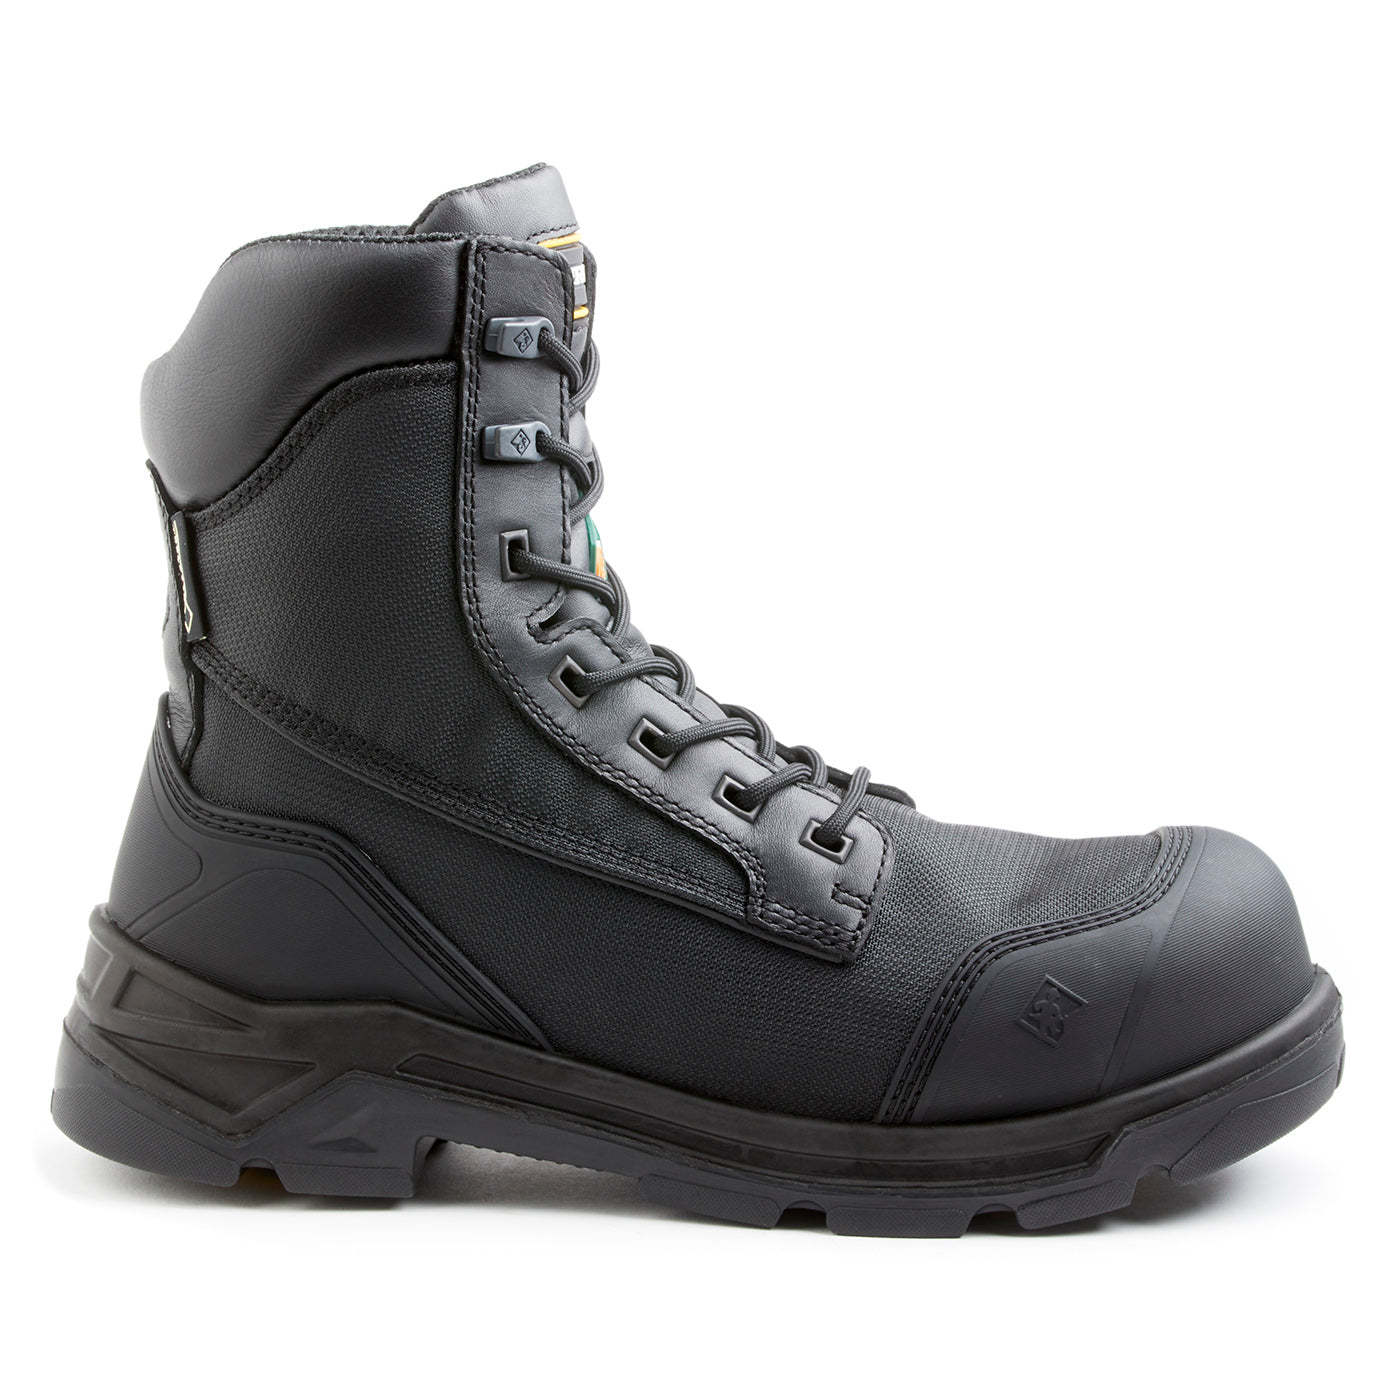 VORTEX, men's work boots